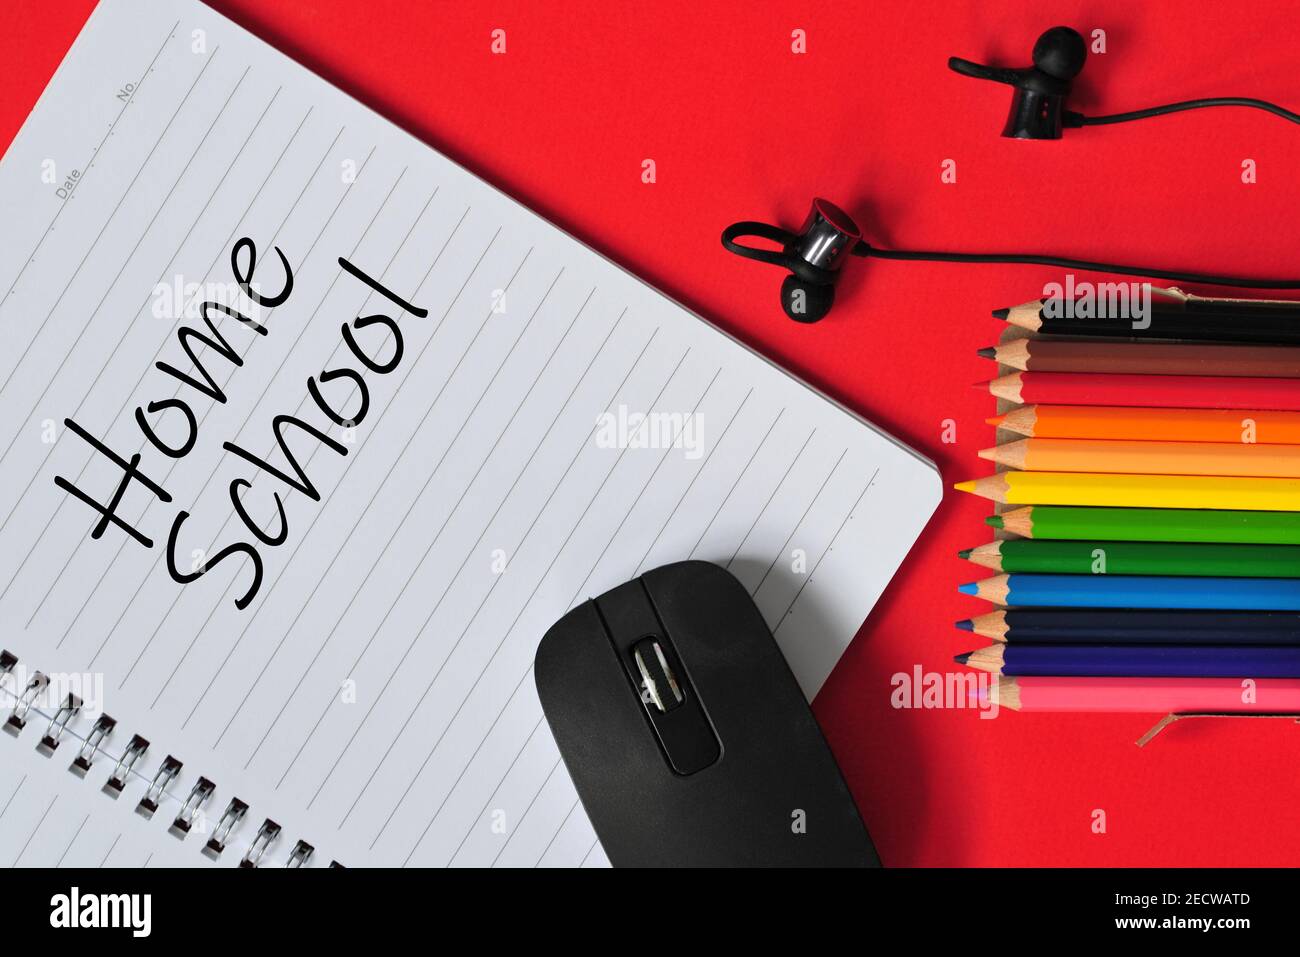 Concetto di educazione in riferimento all'apprendimento online. Mouse, auricolari, notebook, matite colorate con testo "Home School". Punti di messa a fuoco selettivi Foto Stock